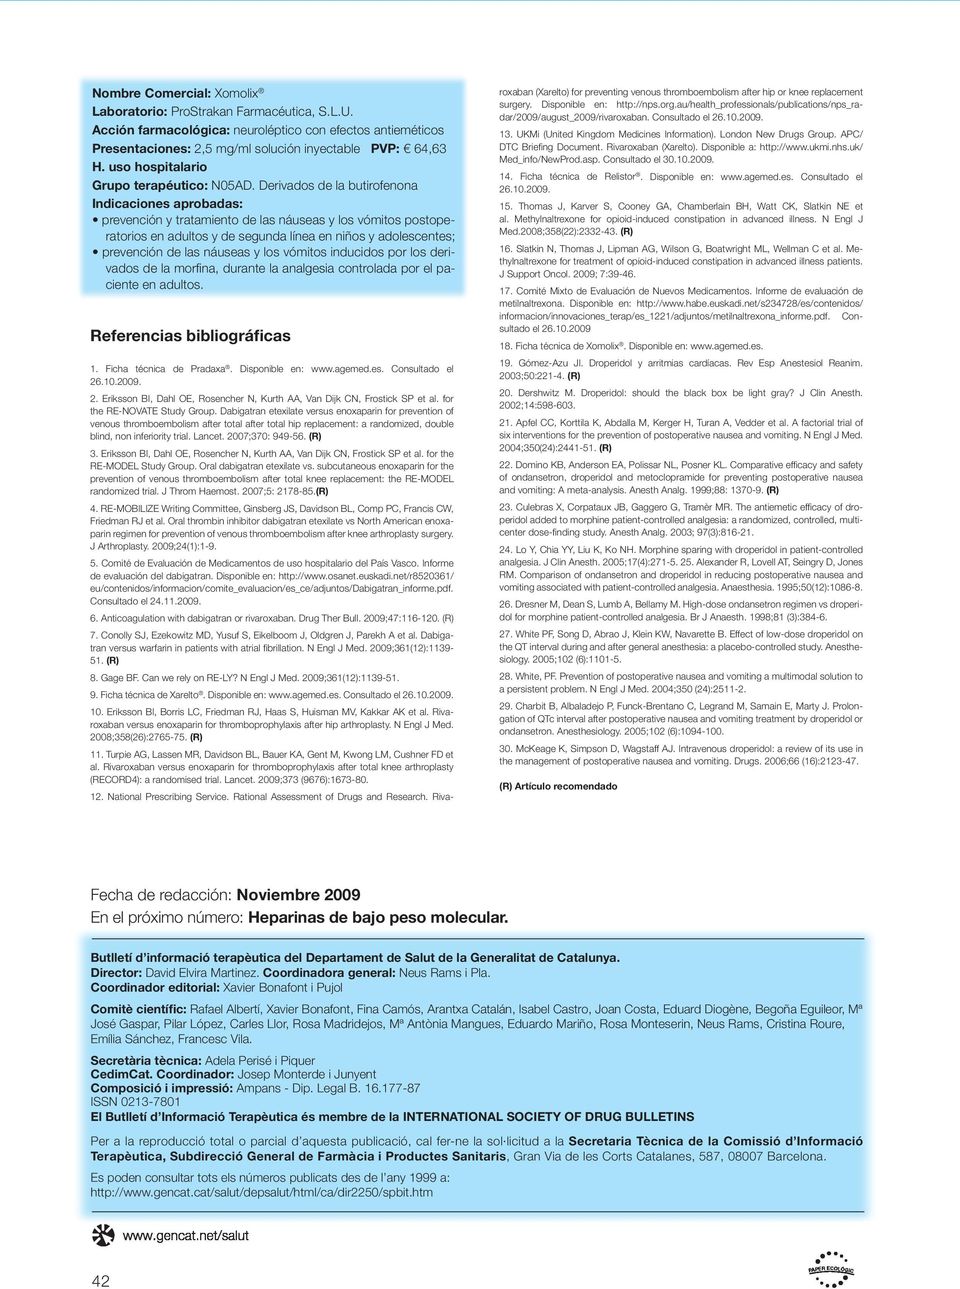 Derivados de la butirofenona Indicaciones aprobadas: prevención y tratamiento de las náuseas y los vómitos postoperatorios en adultos y de segunda línea en niños y adolescentes; prevención de las